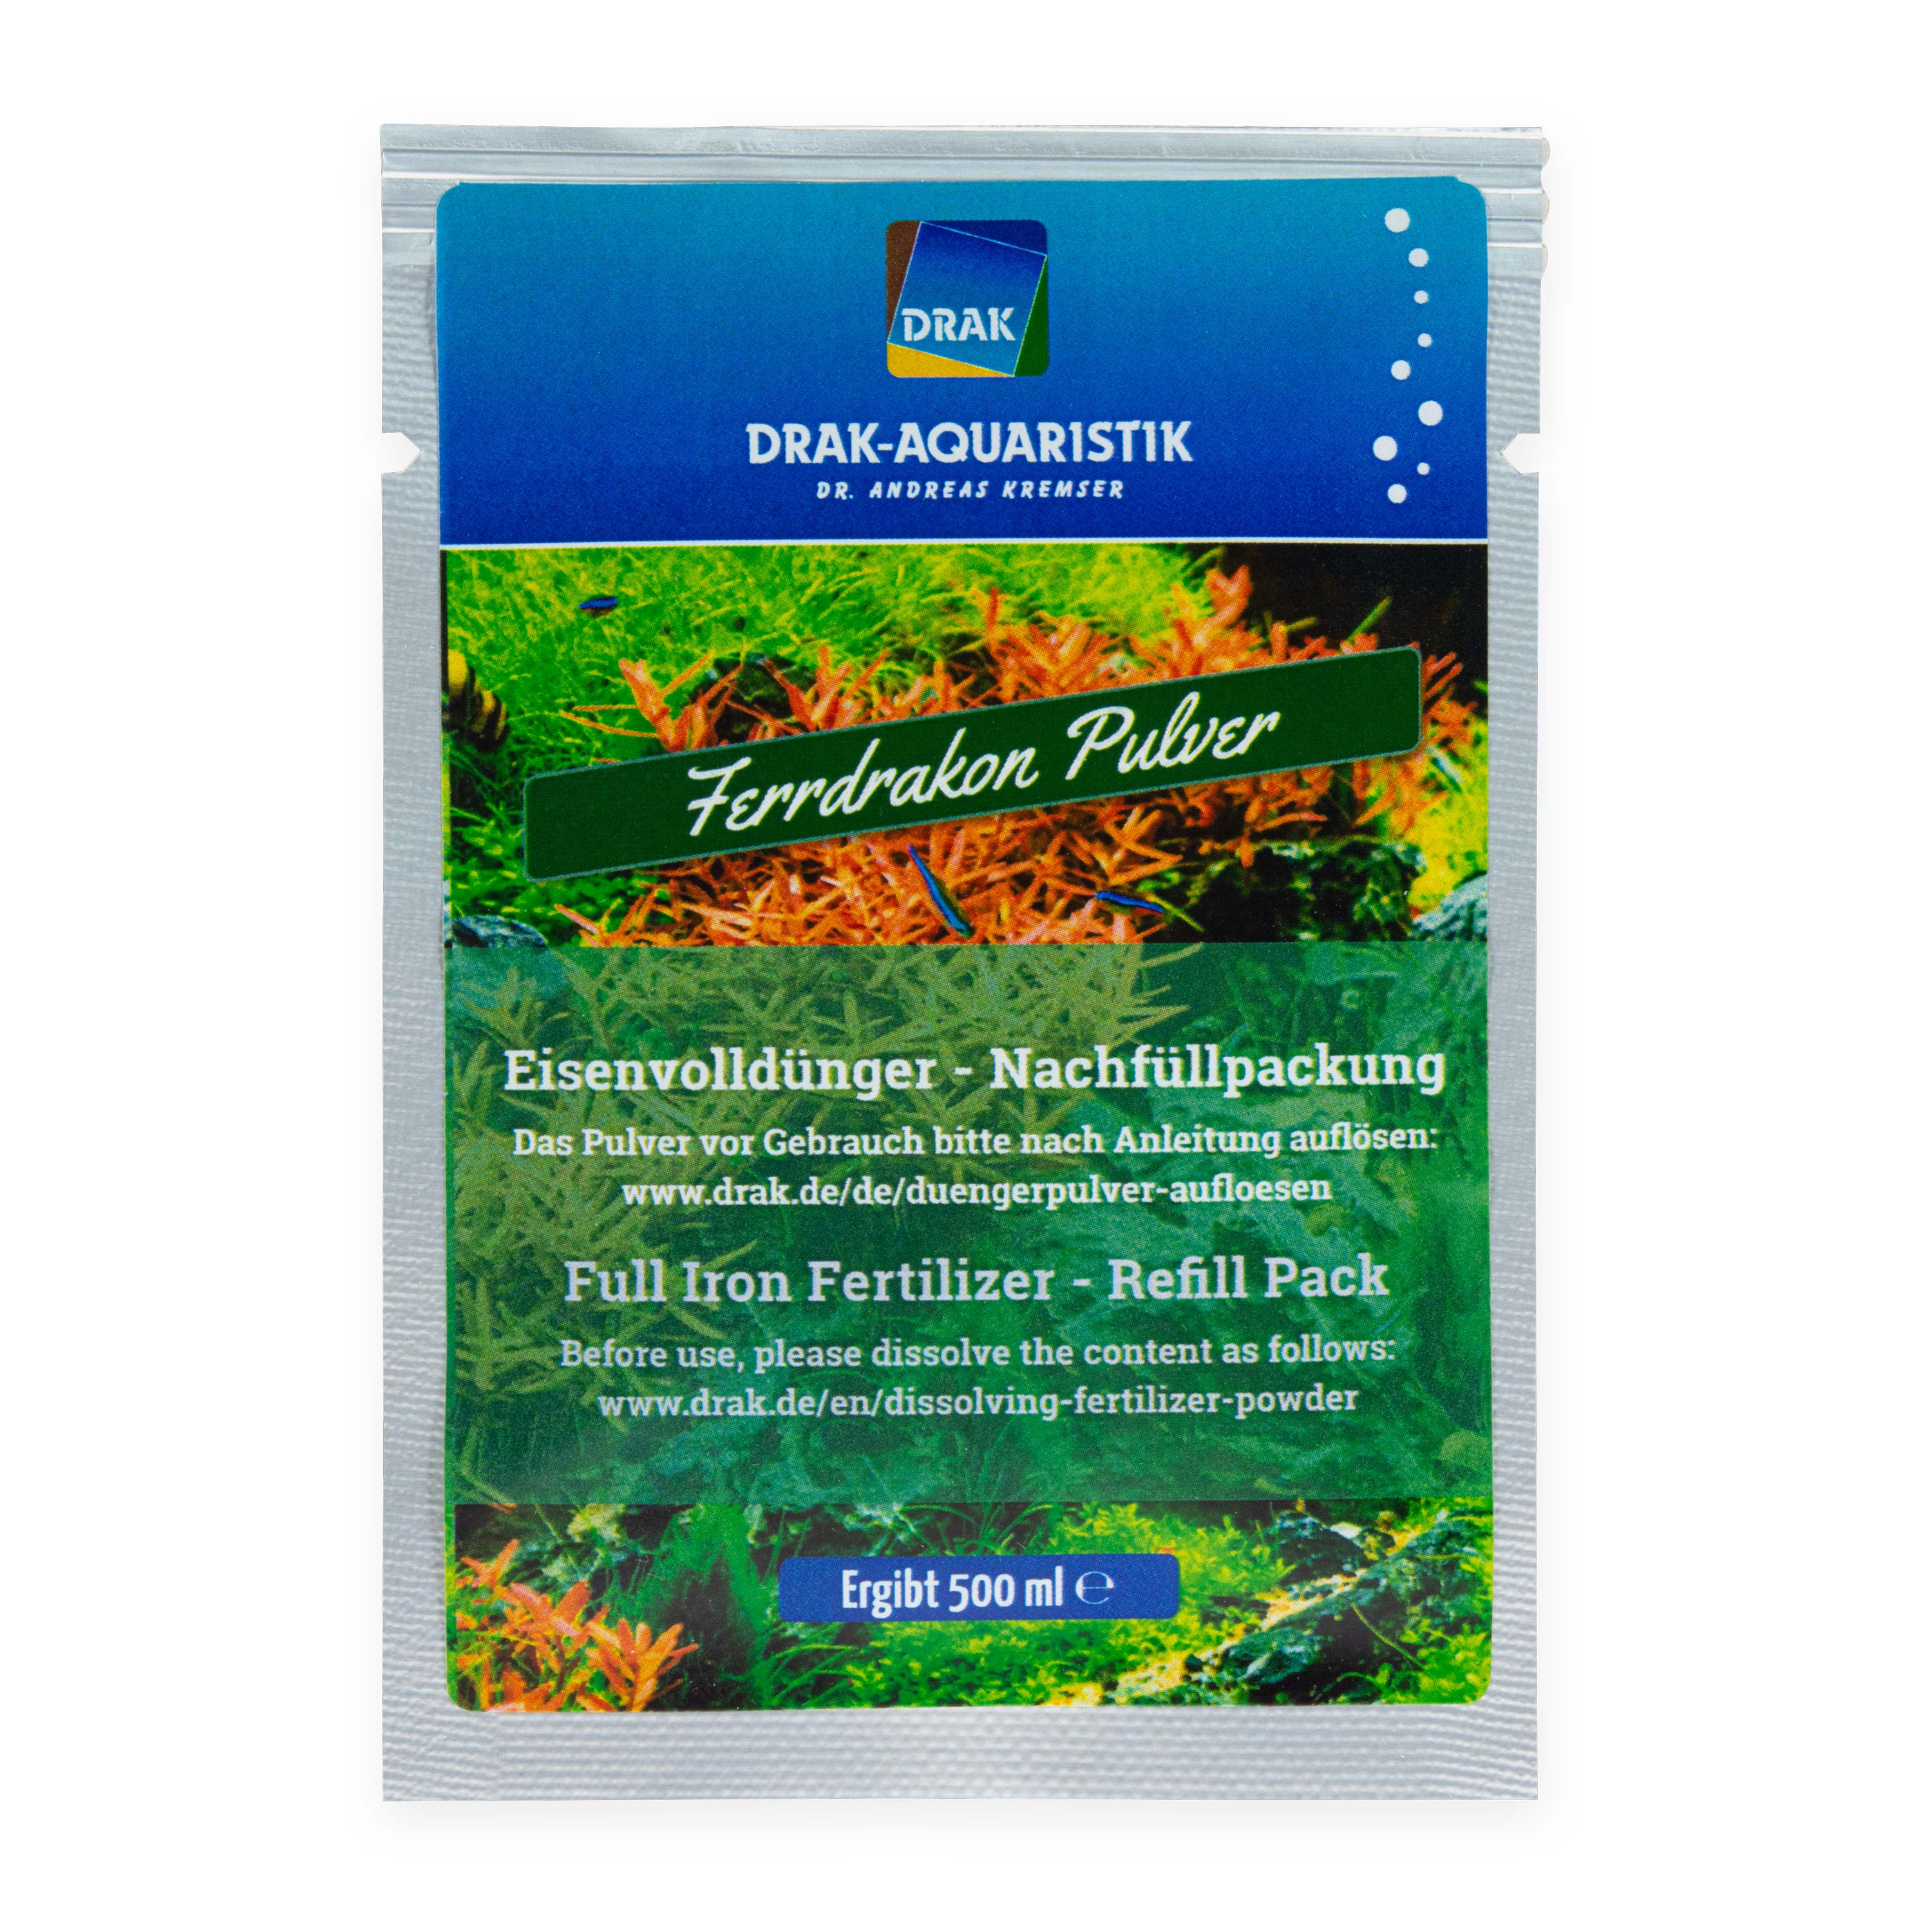 Ferrdrakon Full Iron Fertilizer 0.5 l Refill